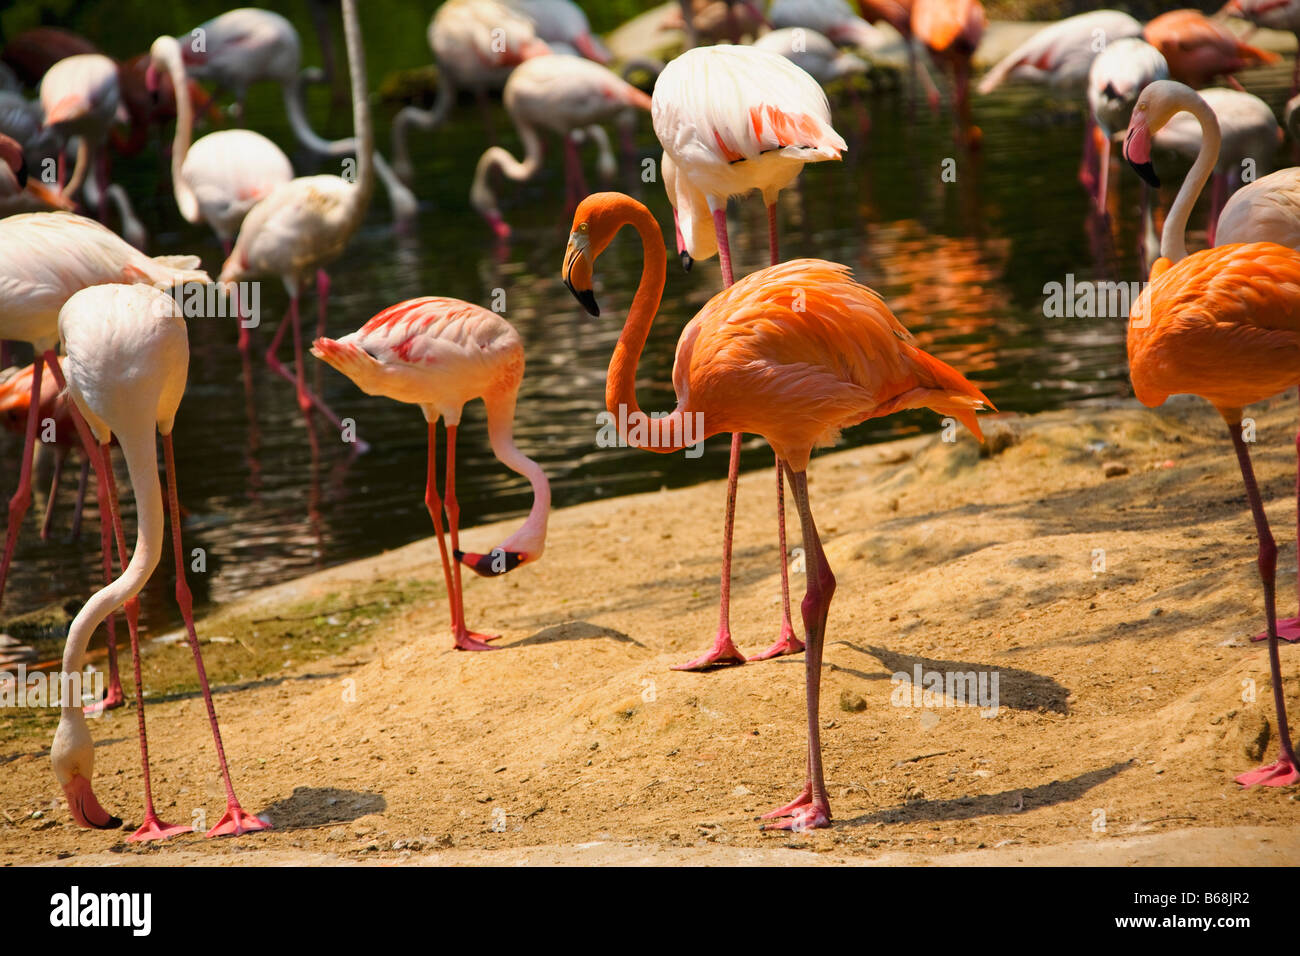 Flamingoes at a riverside, Xiangjiang Safari Park, Guangzhou, Guangdong Province, China Stock Photo